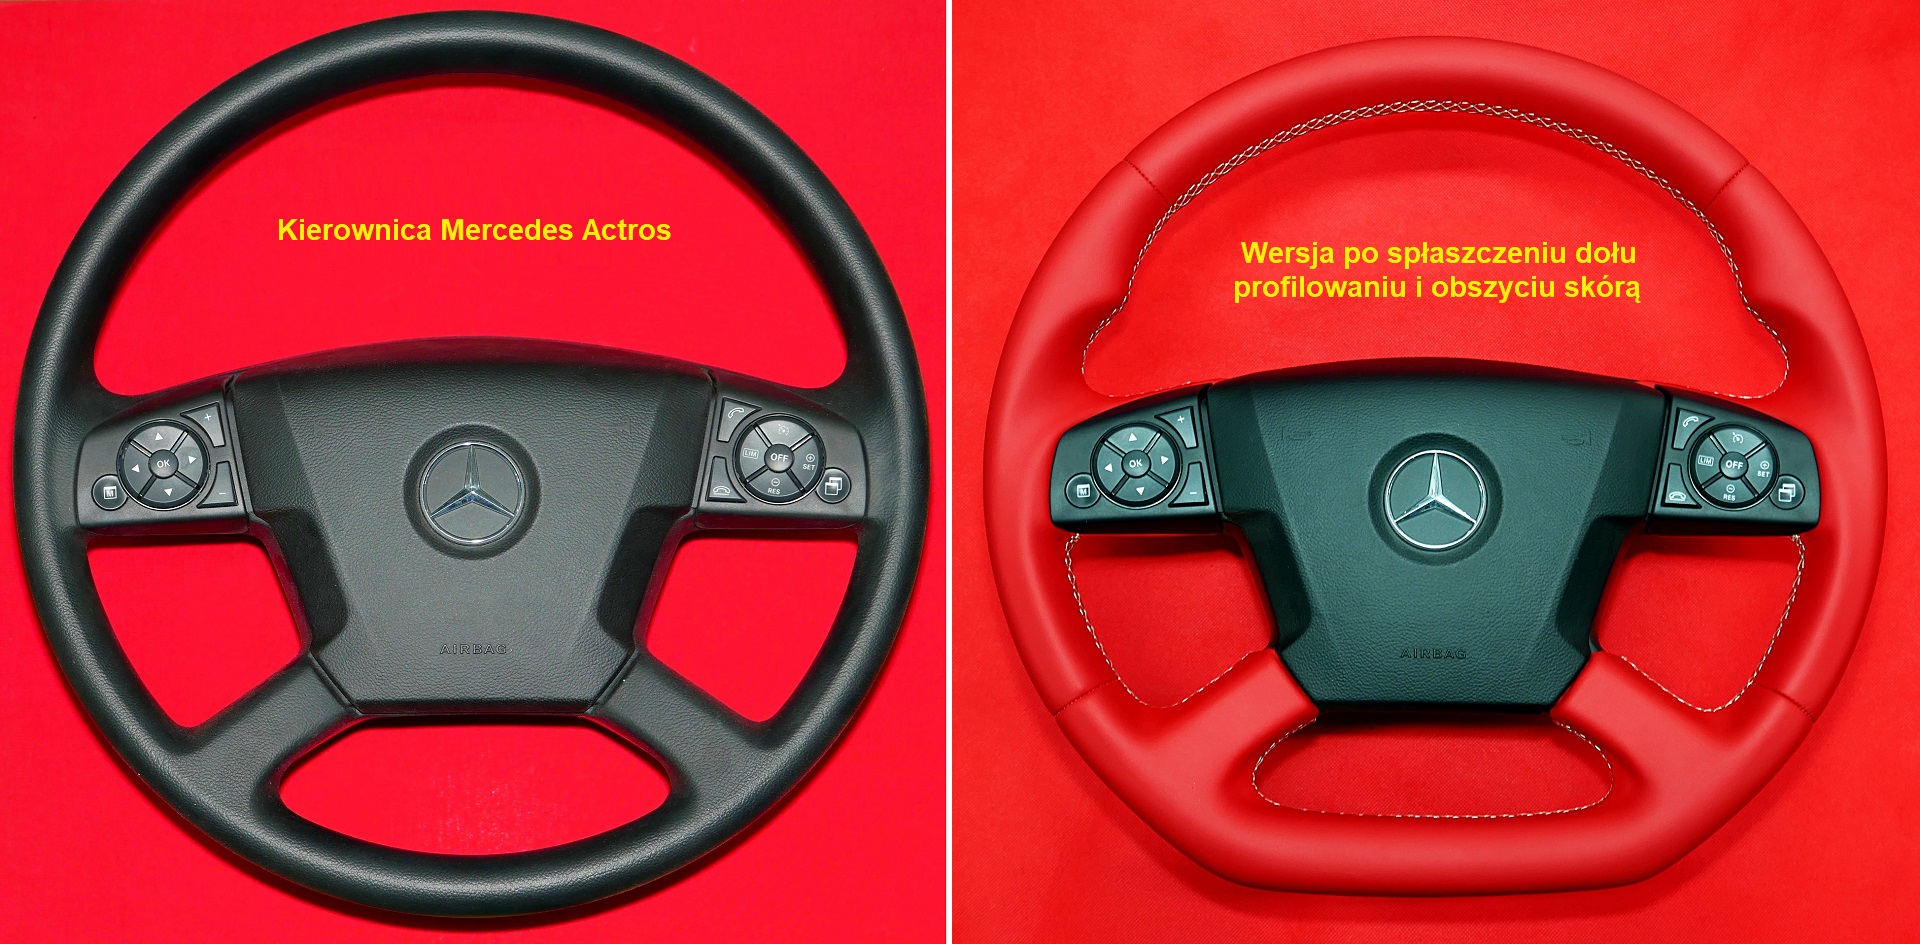 Mercedes Actros custom steering wheel flat bottom